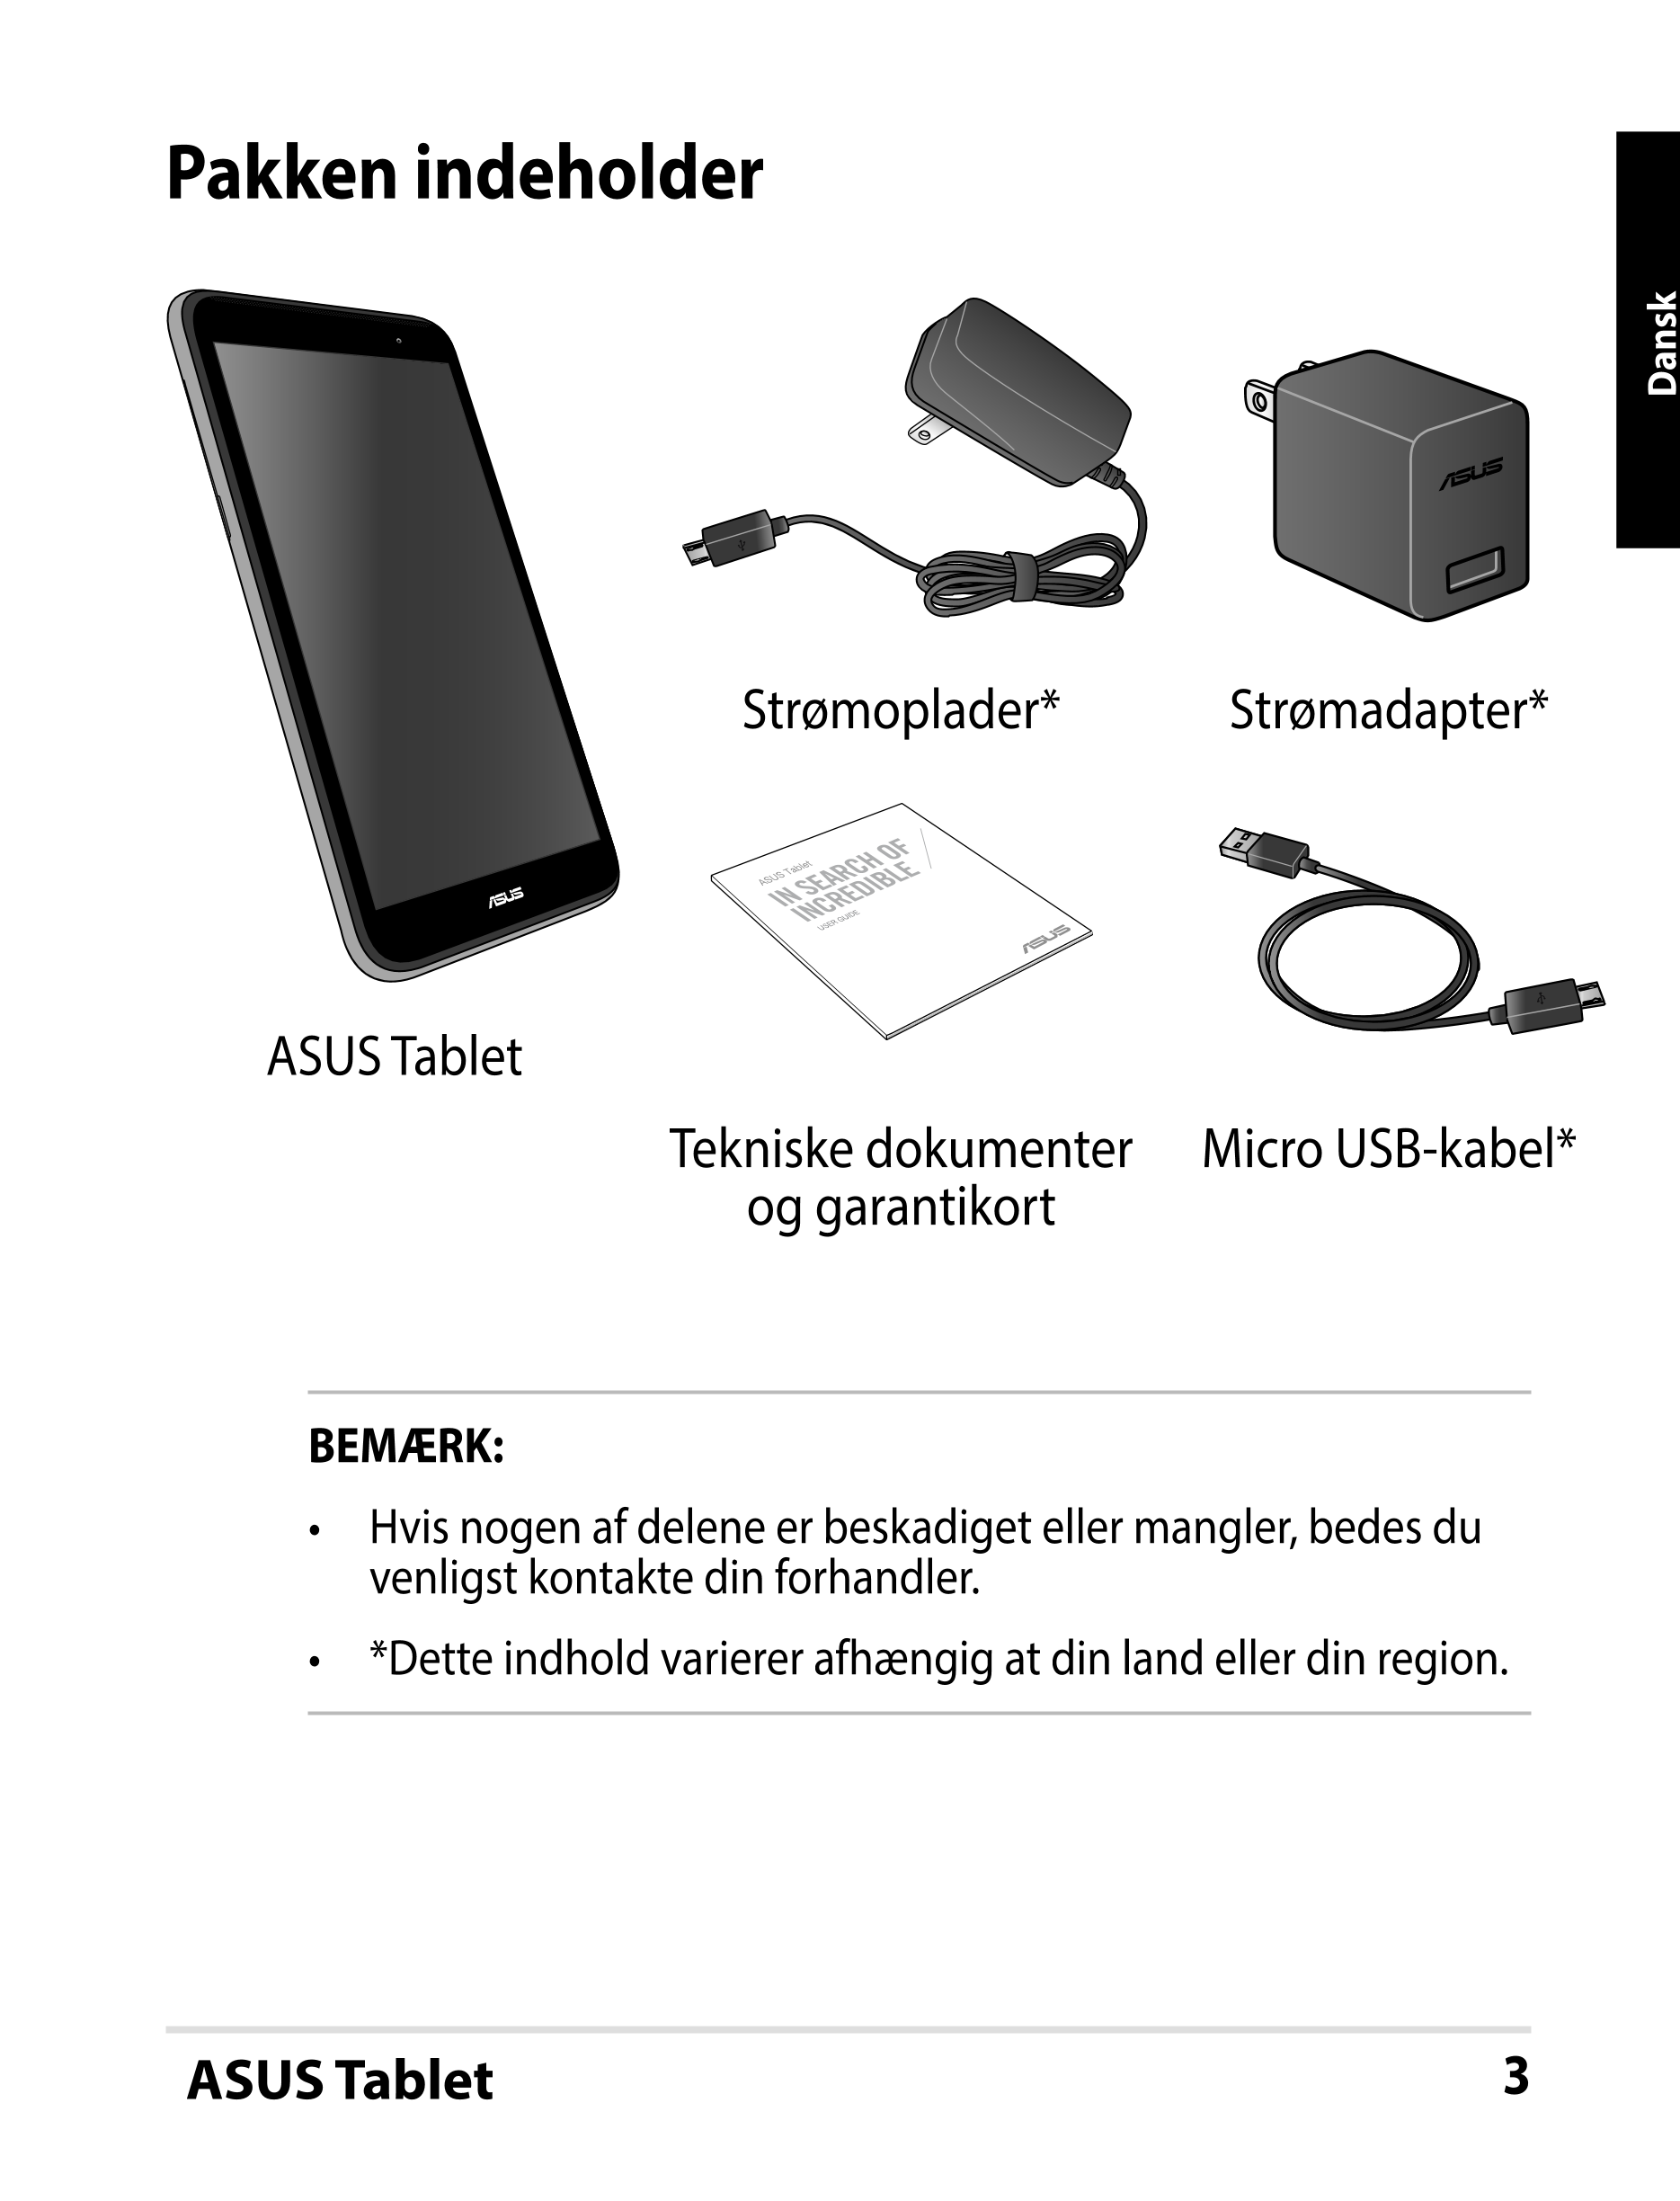 Pakken indeholder
Dansk
Strømoplader* Strømadapter*
ASUS Tablet
USER GUIDE
ASUS Tablet
Tekniske dokumenter  Micro USB-kabel*
og 